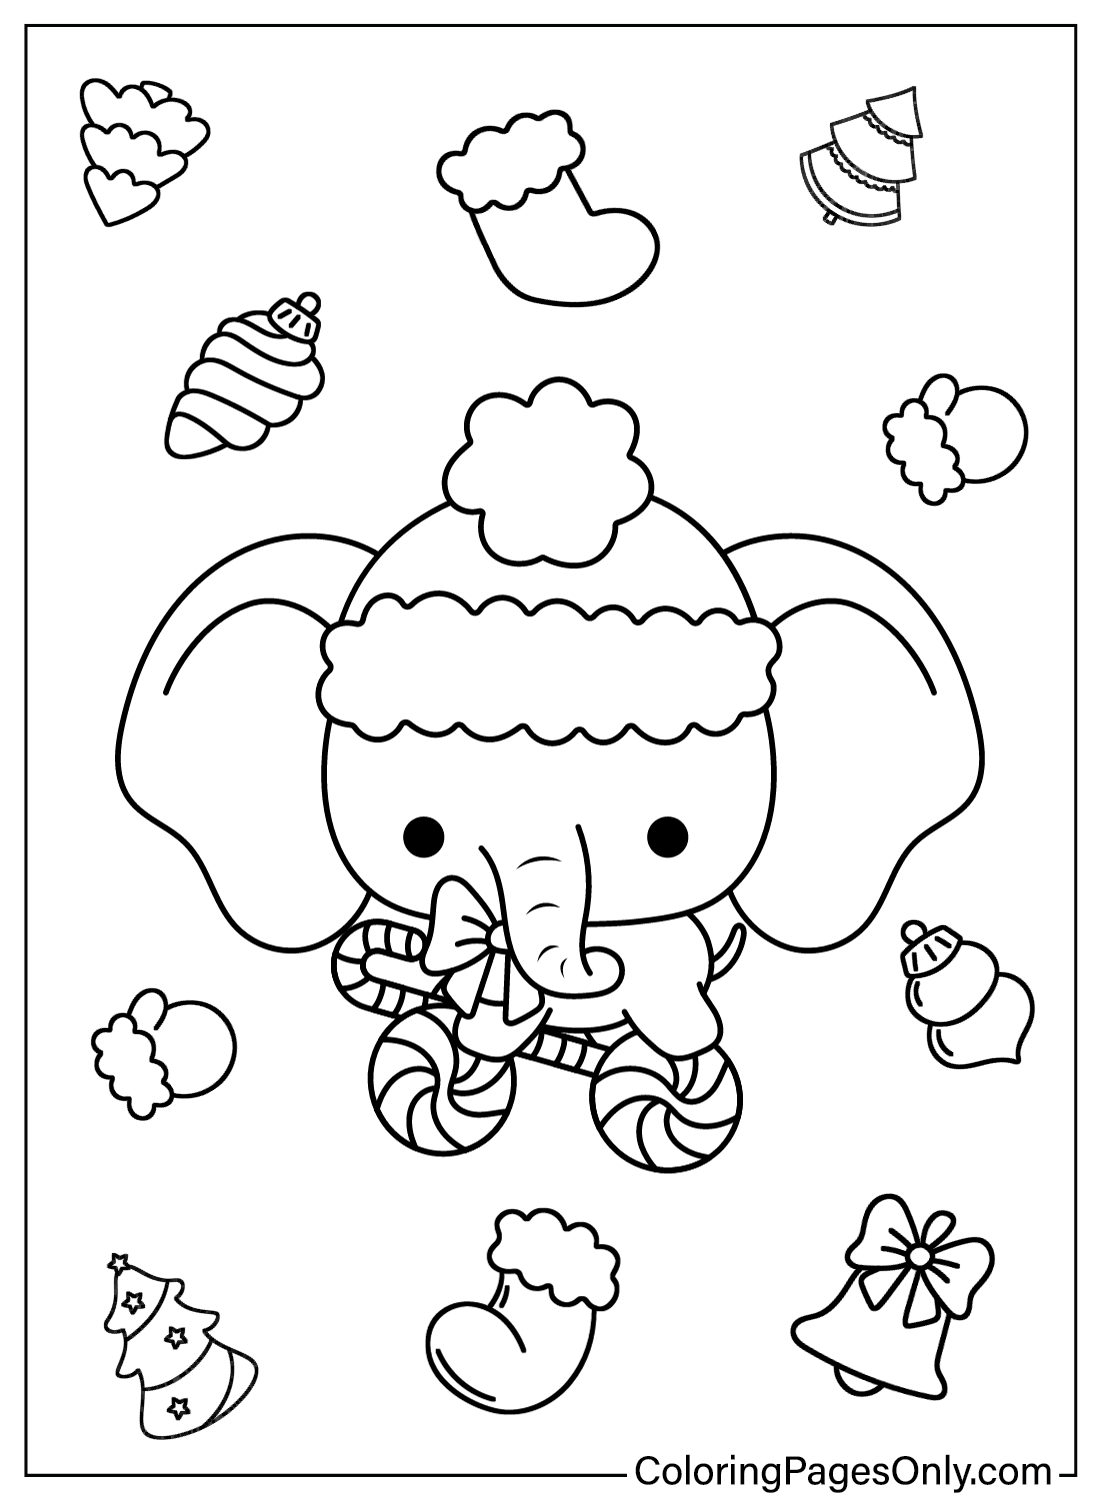 Disegni da colorare di elefanti di Natale di animali natalizi